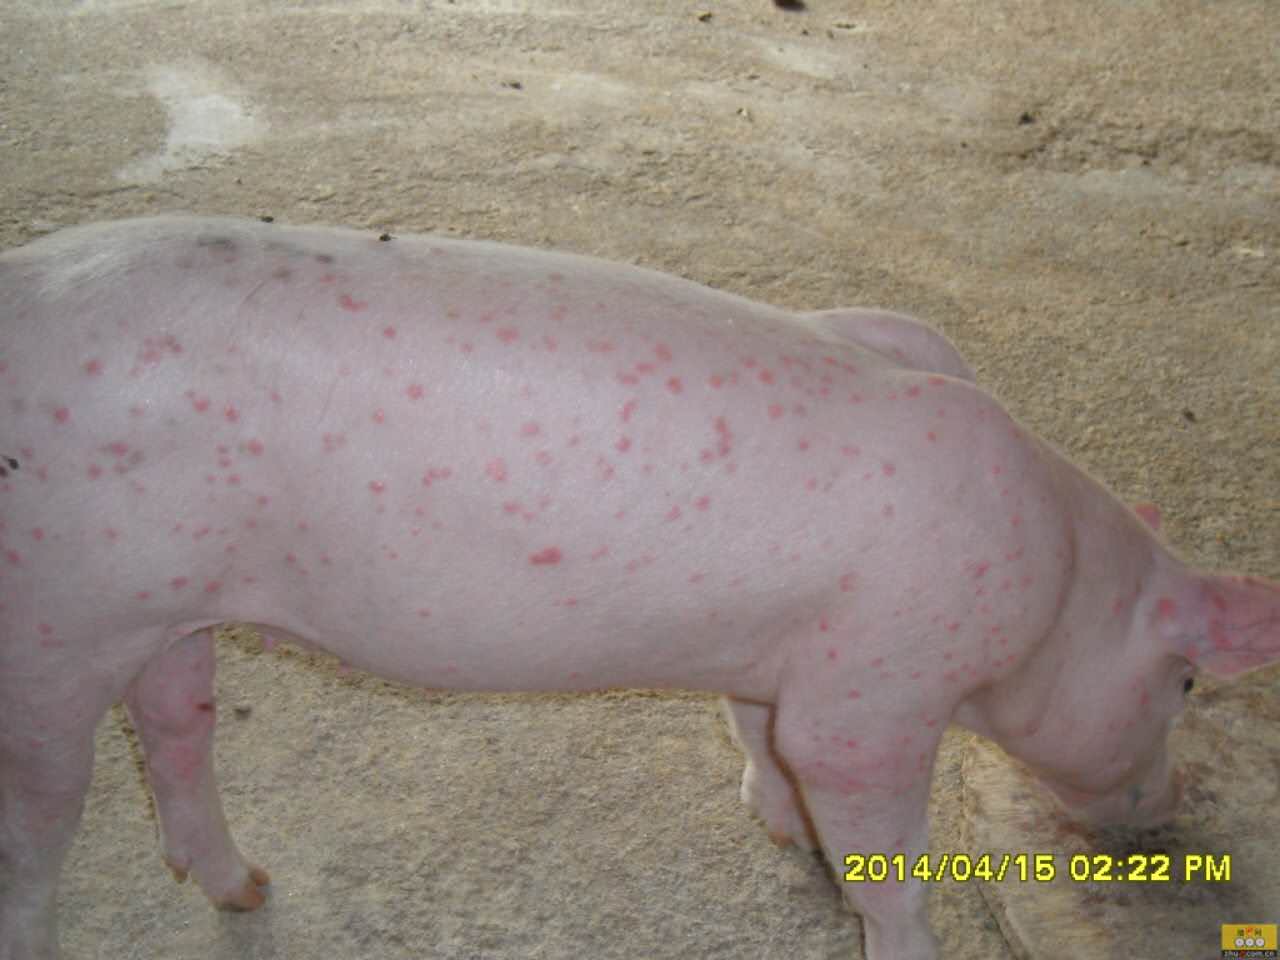 猪病问诊:猪皮肤病,瘙痒,母猪和保育猪发病,体温正常,采食正常